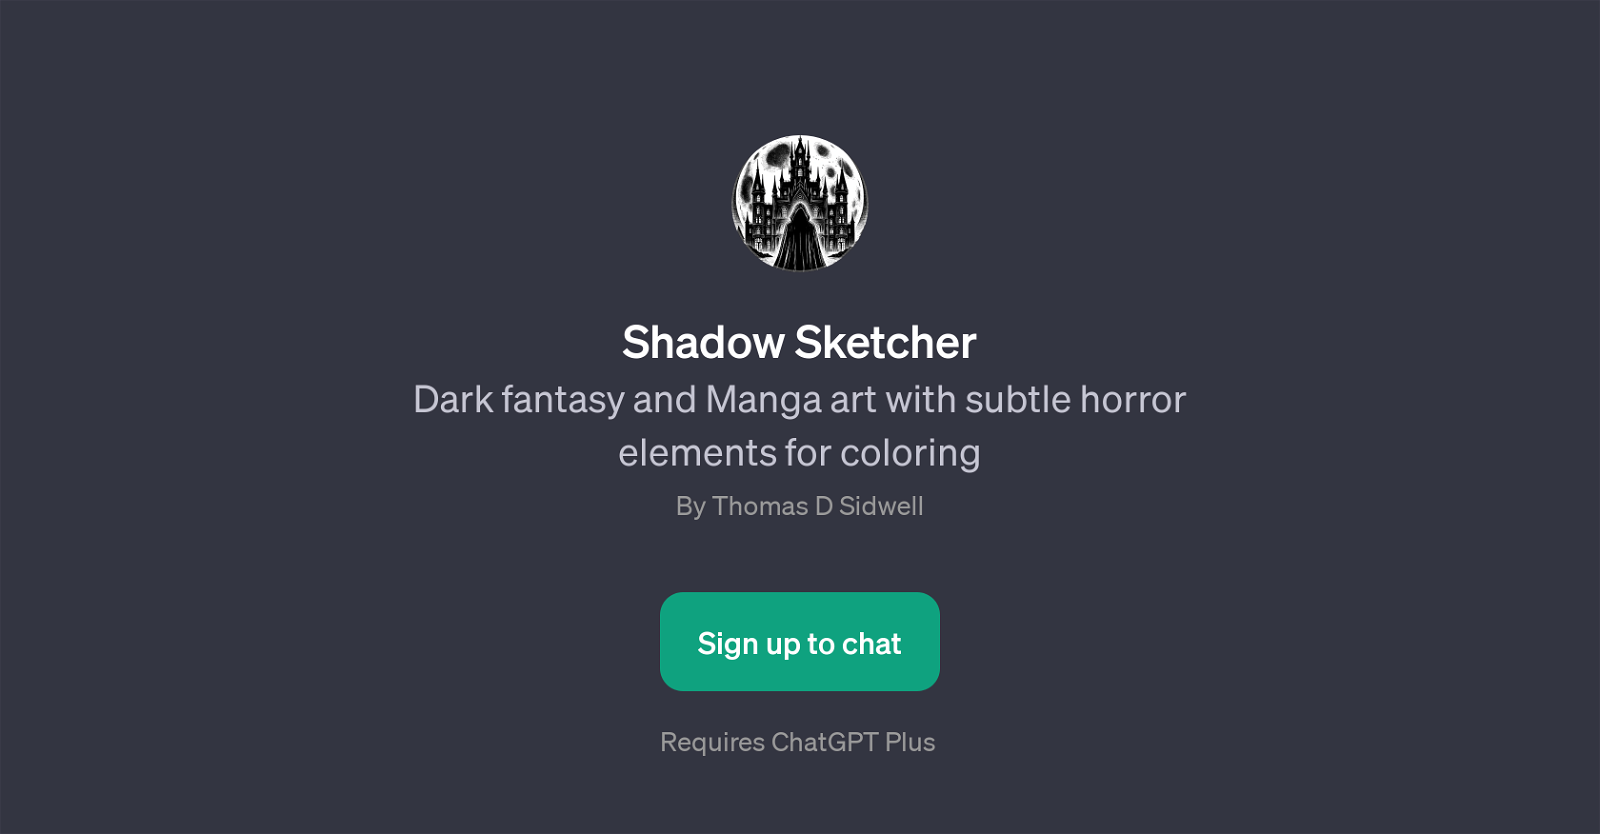 Shadow Sketcher website